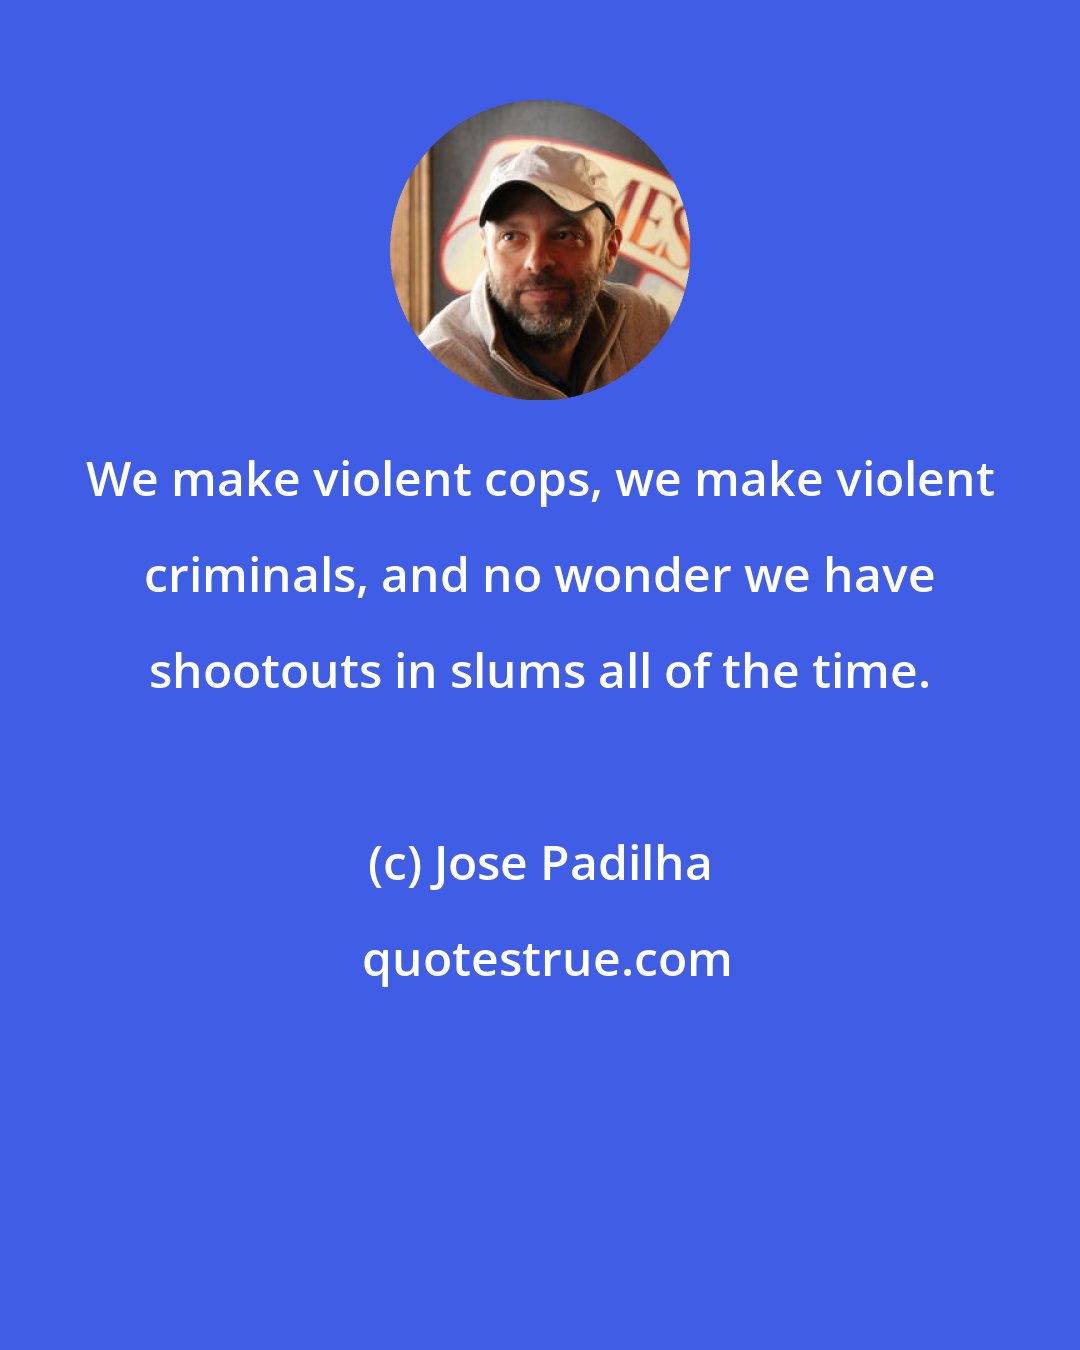 Jose Padilha: We make violent cops, we make violent criminals, and no wonder we have shootouts in slums all of the time.